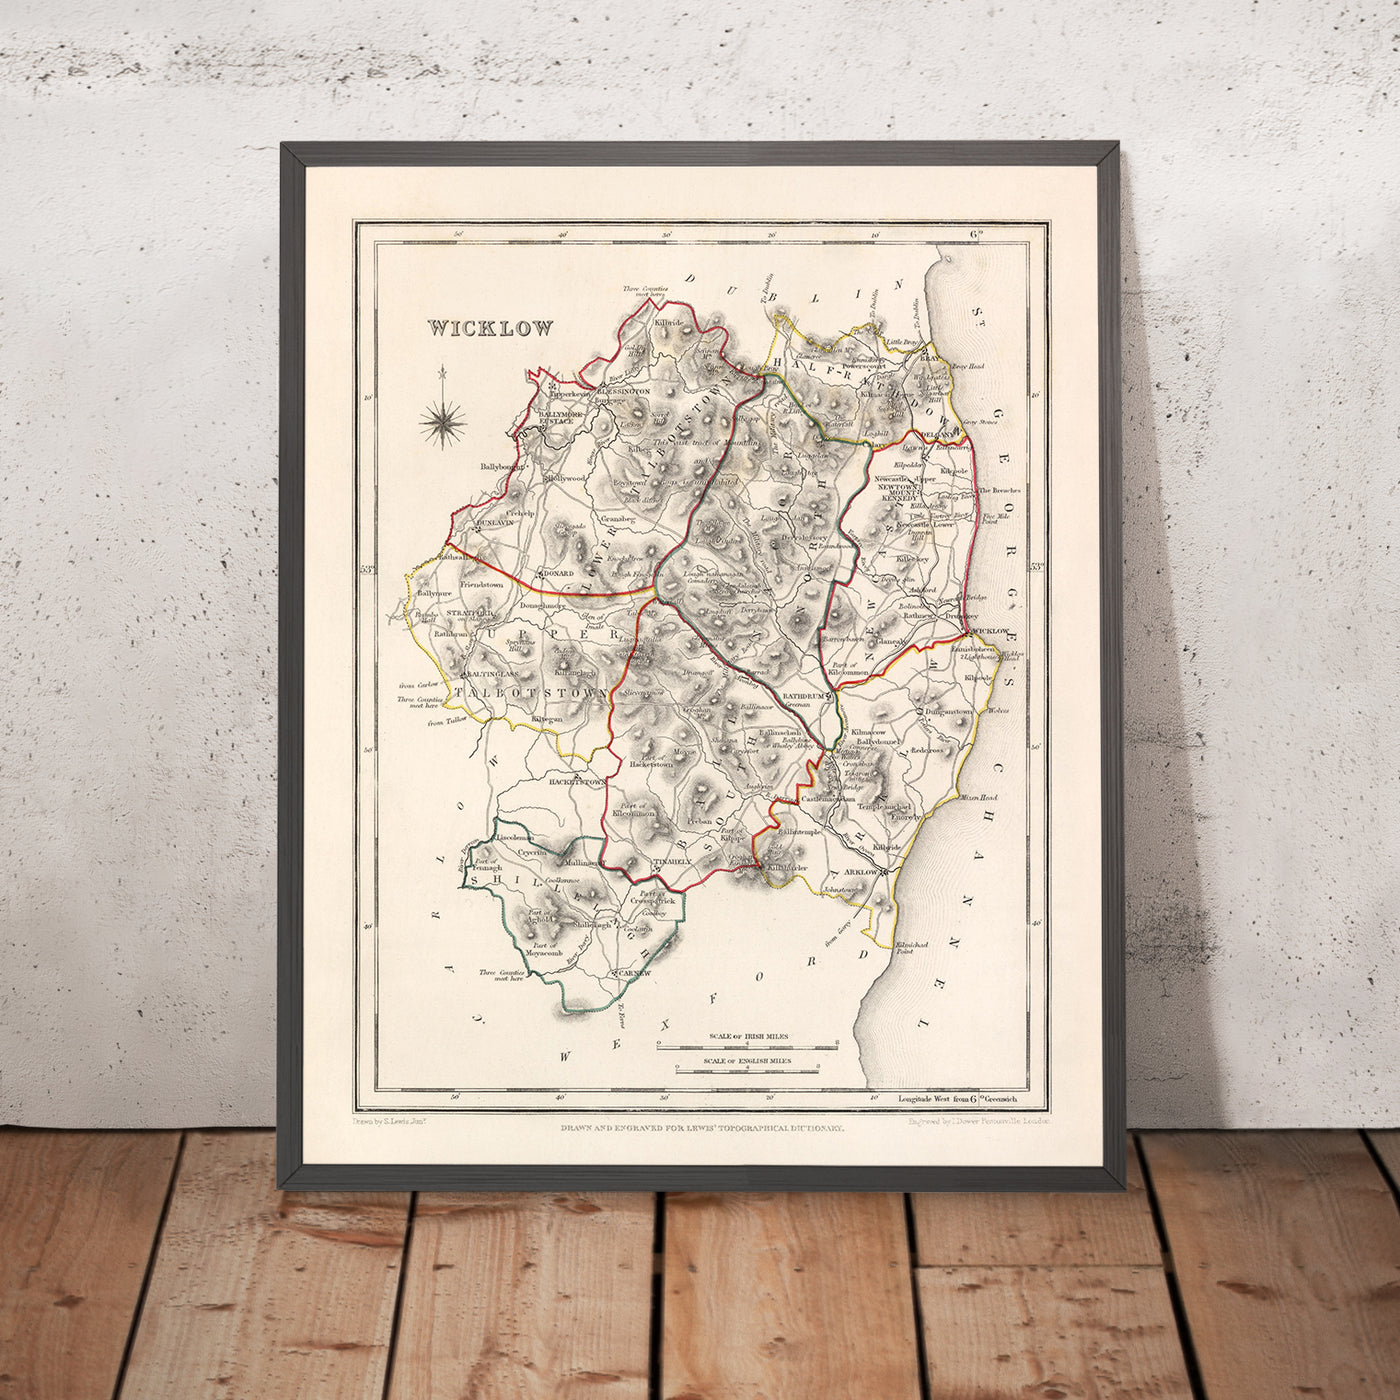 Ancienne carte du comté de Wicklow par Samuel Lewis, 1844 : Bray, Arklow, Baltinglass, Blessington, Glendalough